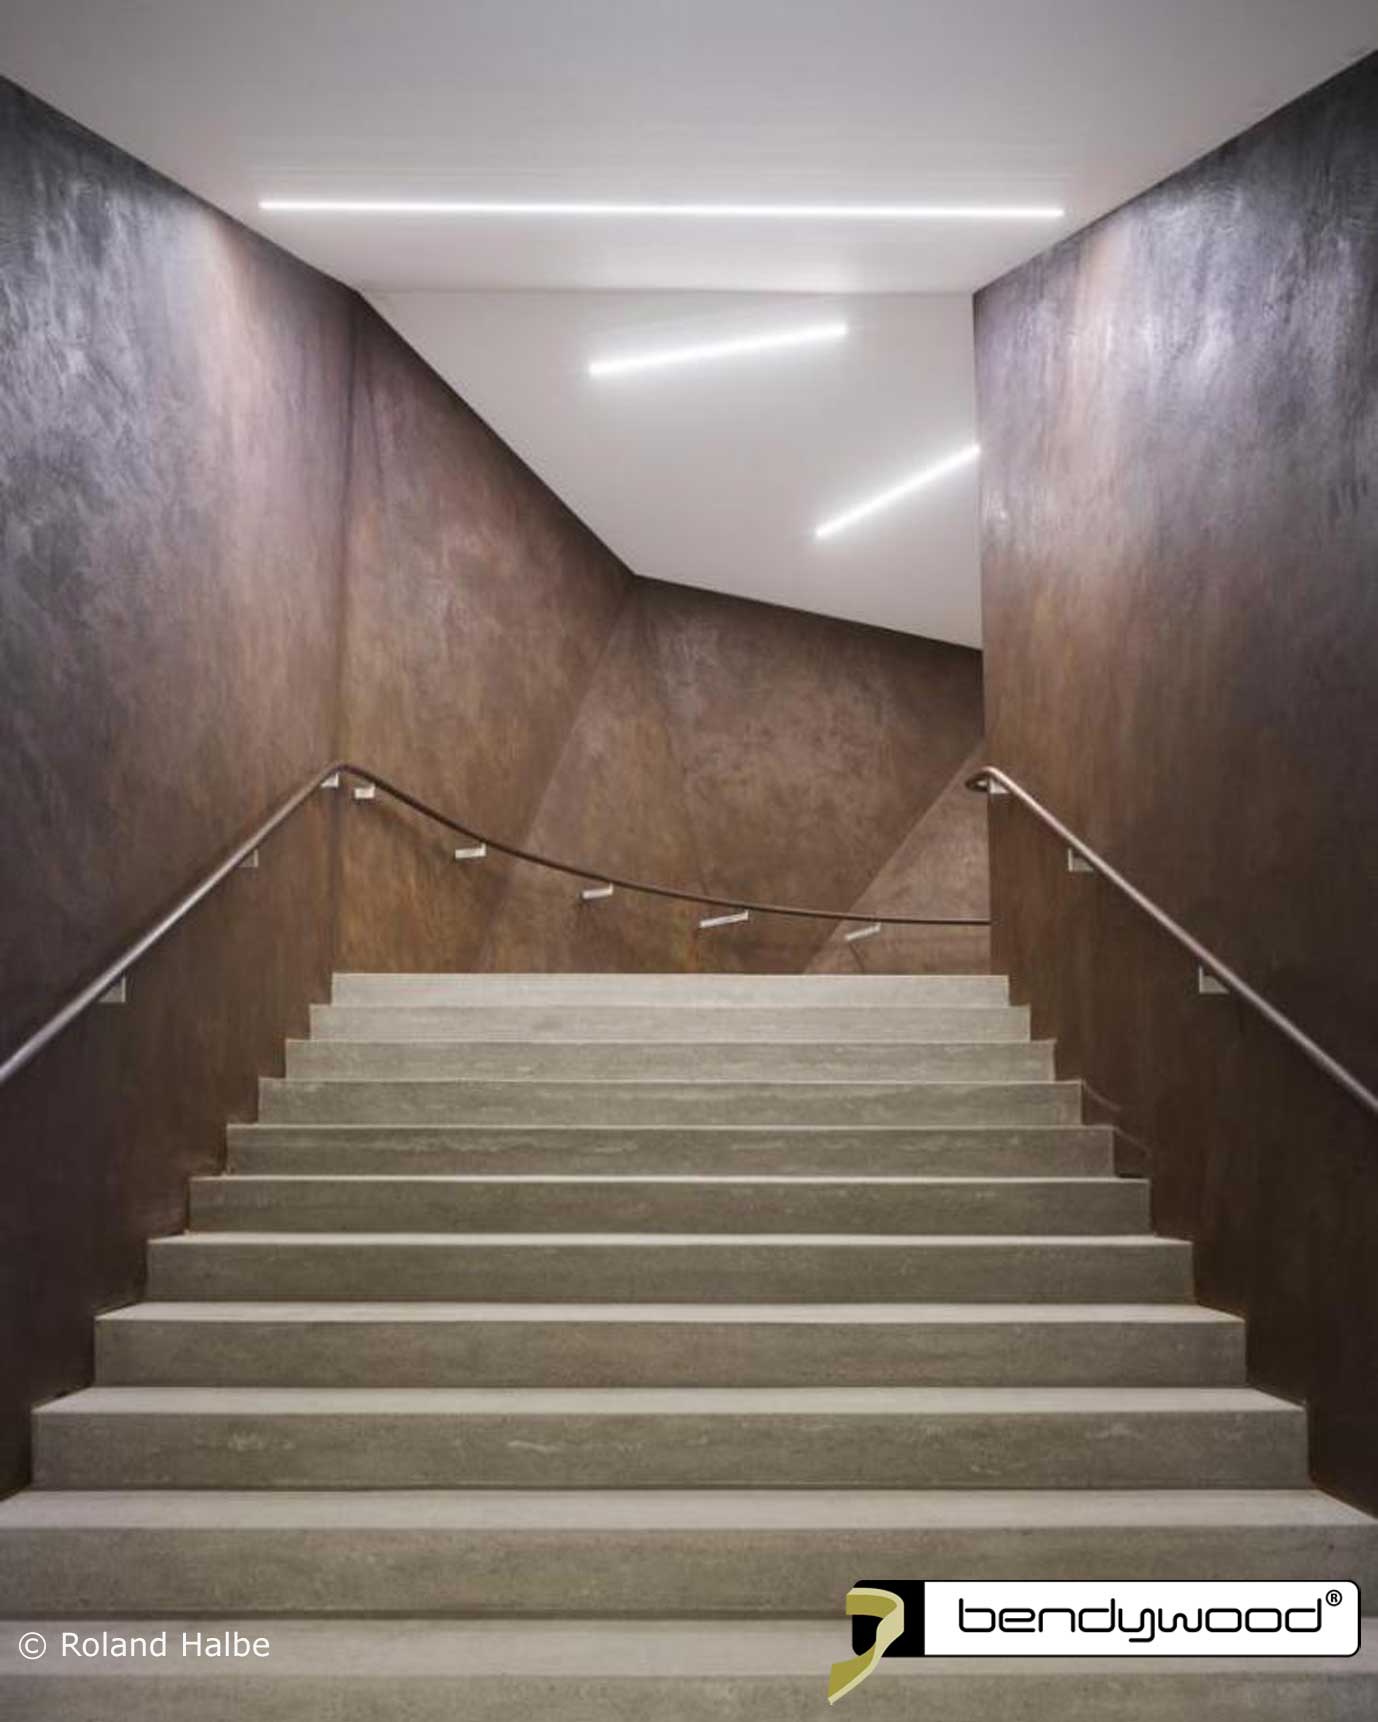 Escaliers de la nouvelle salle de concert à Andermatt, la Suisse. Mains courantes courbées en chêne Bendywood®